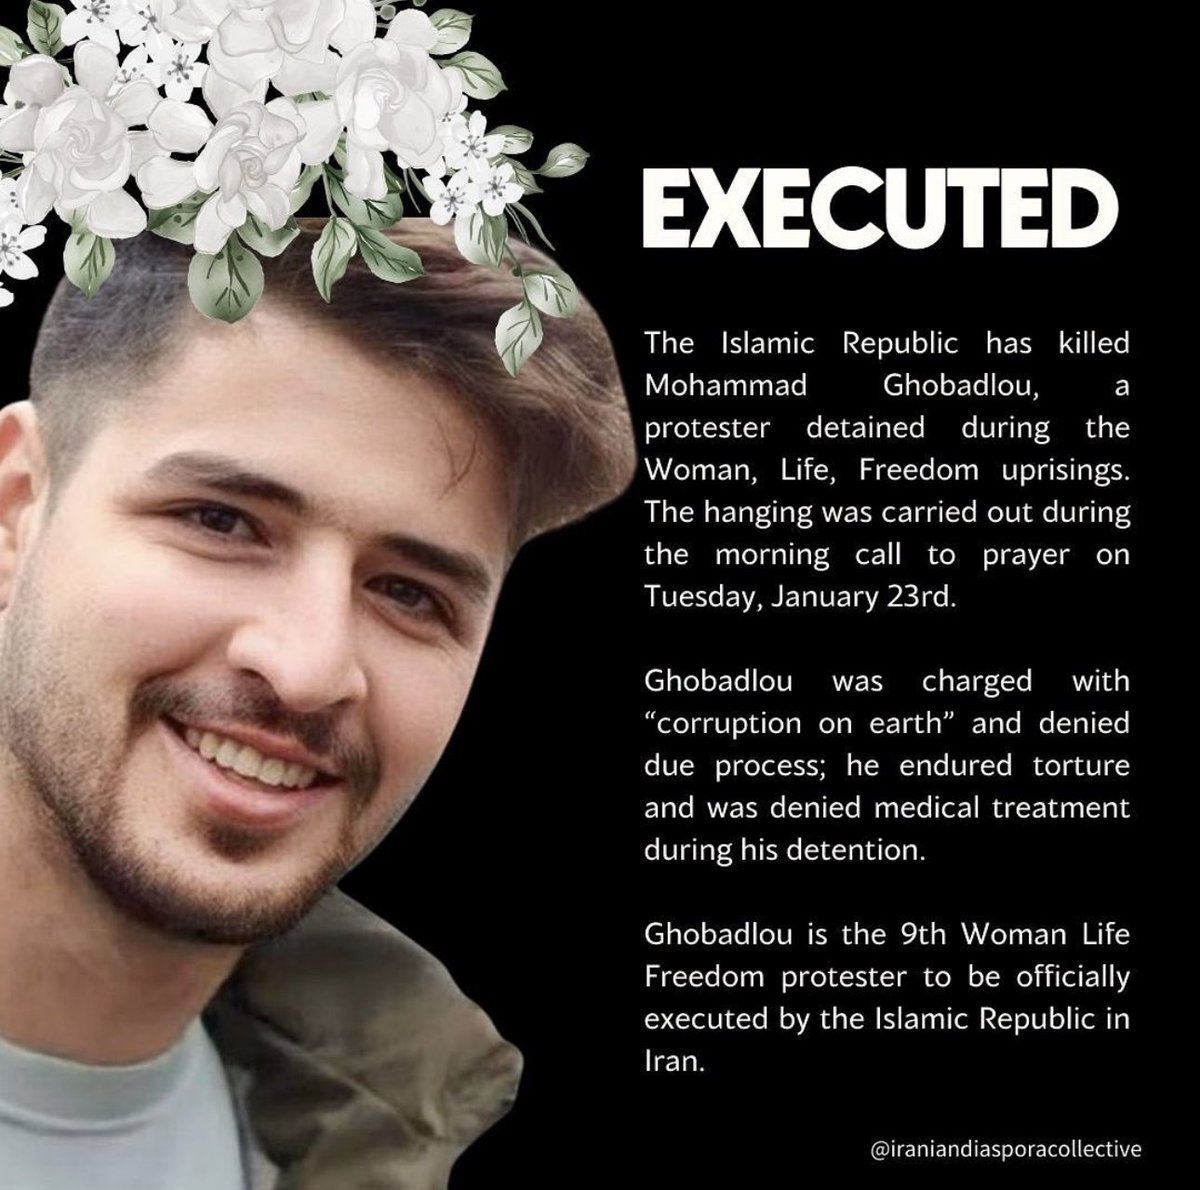 İslam Cumhuriyeti, bu sabah ezan okunduktan sonra Muhammed'i idam etti.
Katil mollalar her gün bir genci öldürüyor.
#MohammadGhobadlou